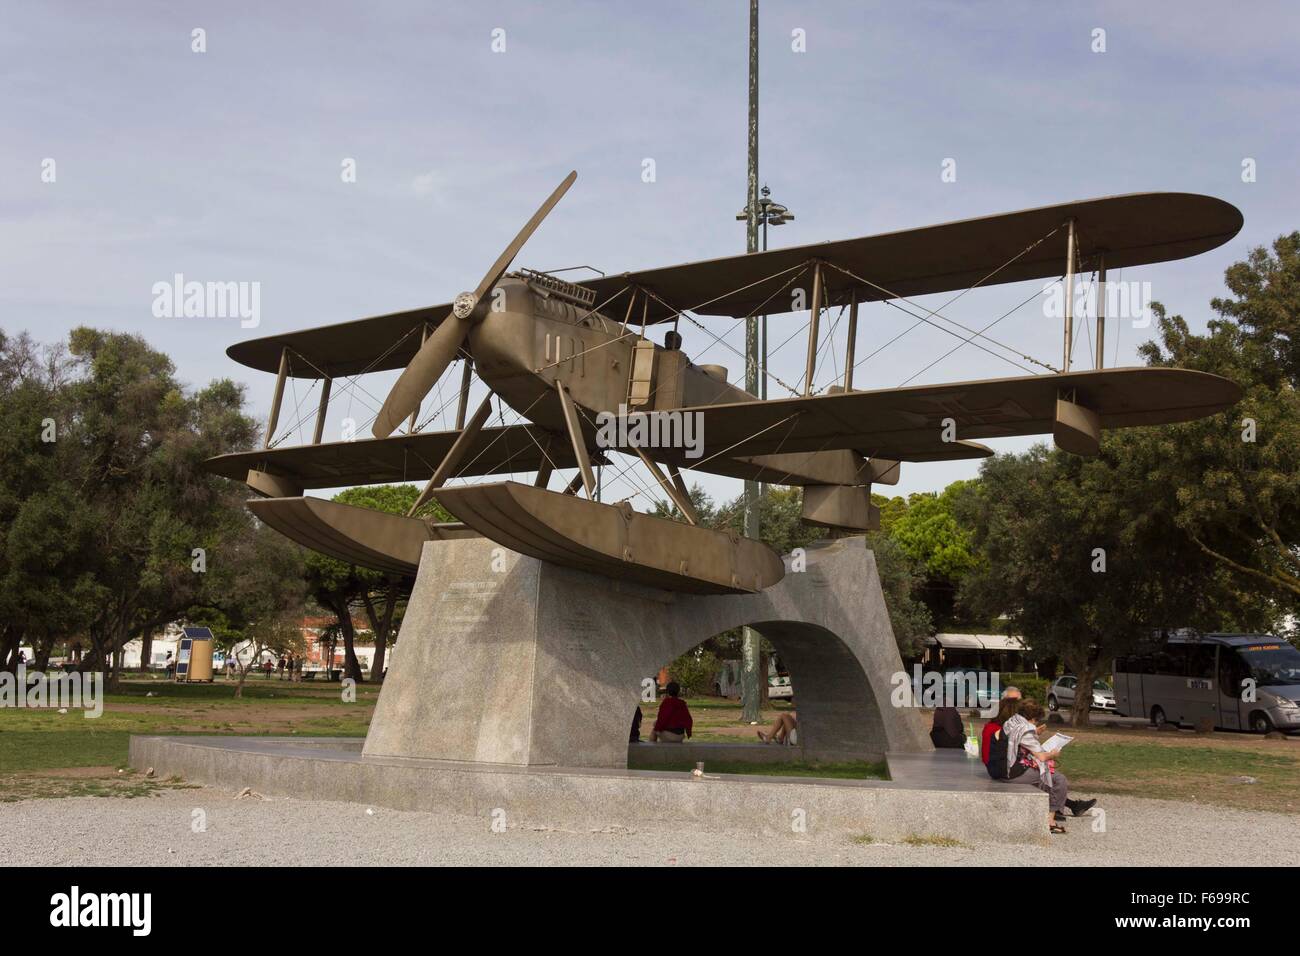 Lisbonne, Portugal - 24 octobre 2014 : Santa Cruz d'hydravions Fairey monument à Belém, Lisbonne Banque D'Images